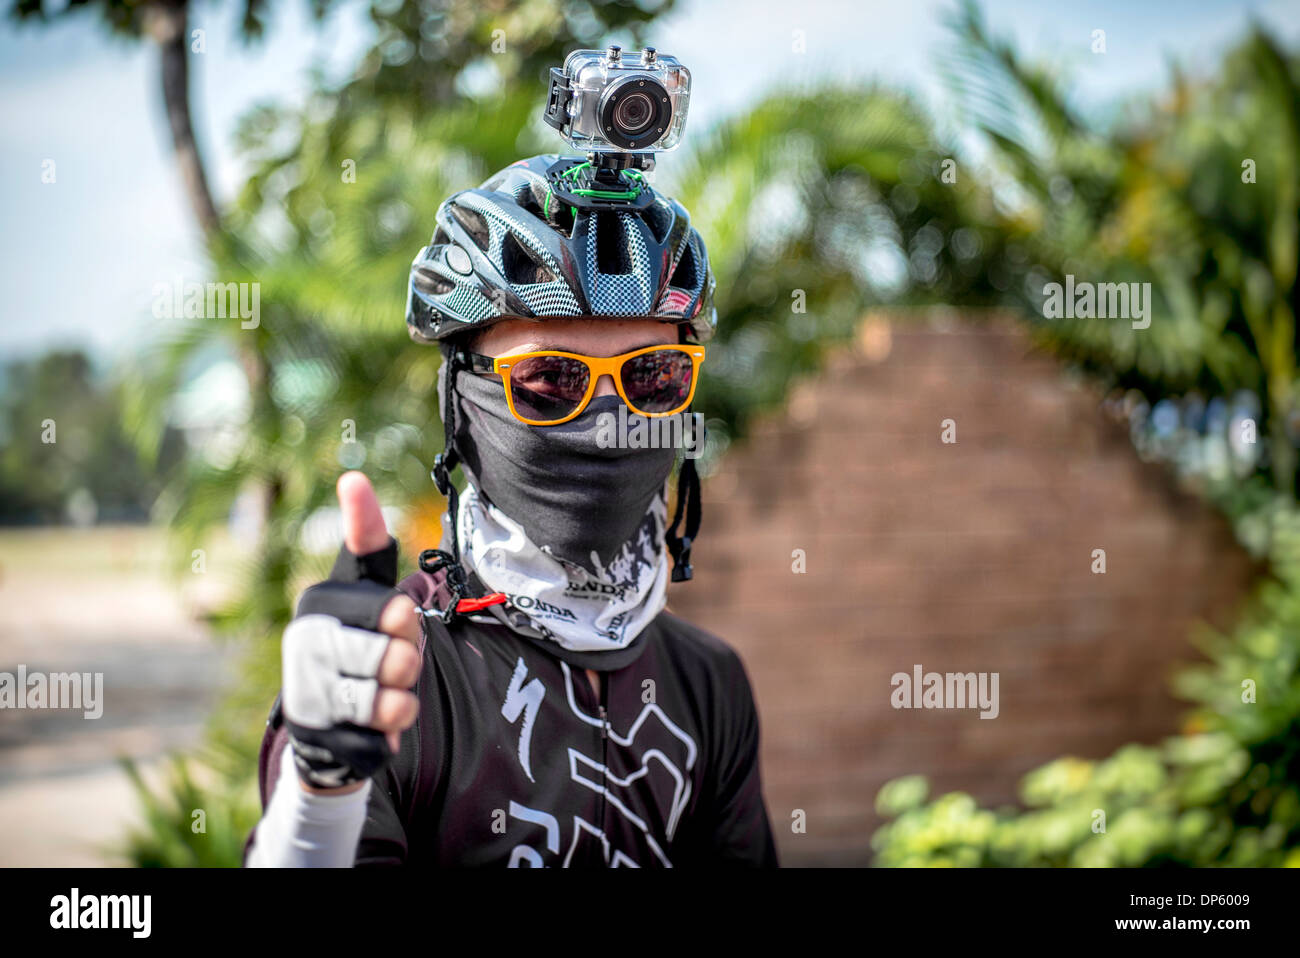 Fotocamera GoPro. Concorrente in bicicletta che indossa una videocamera  digitale GoPro Hero 3 montata su casco per registrare il suo evento.  Thailandia S. E. Asia Foto stock - Alamy